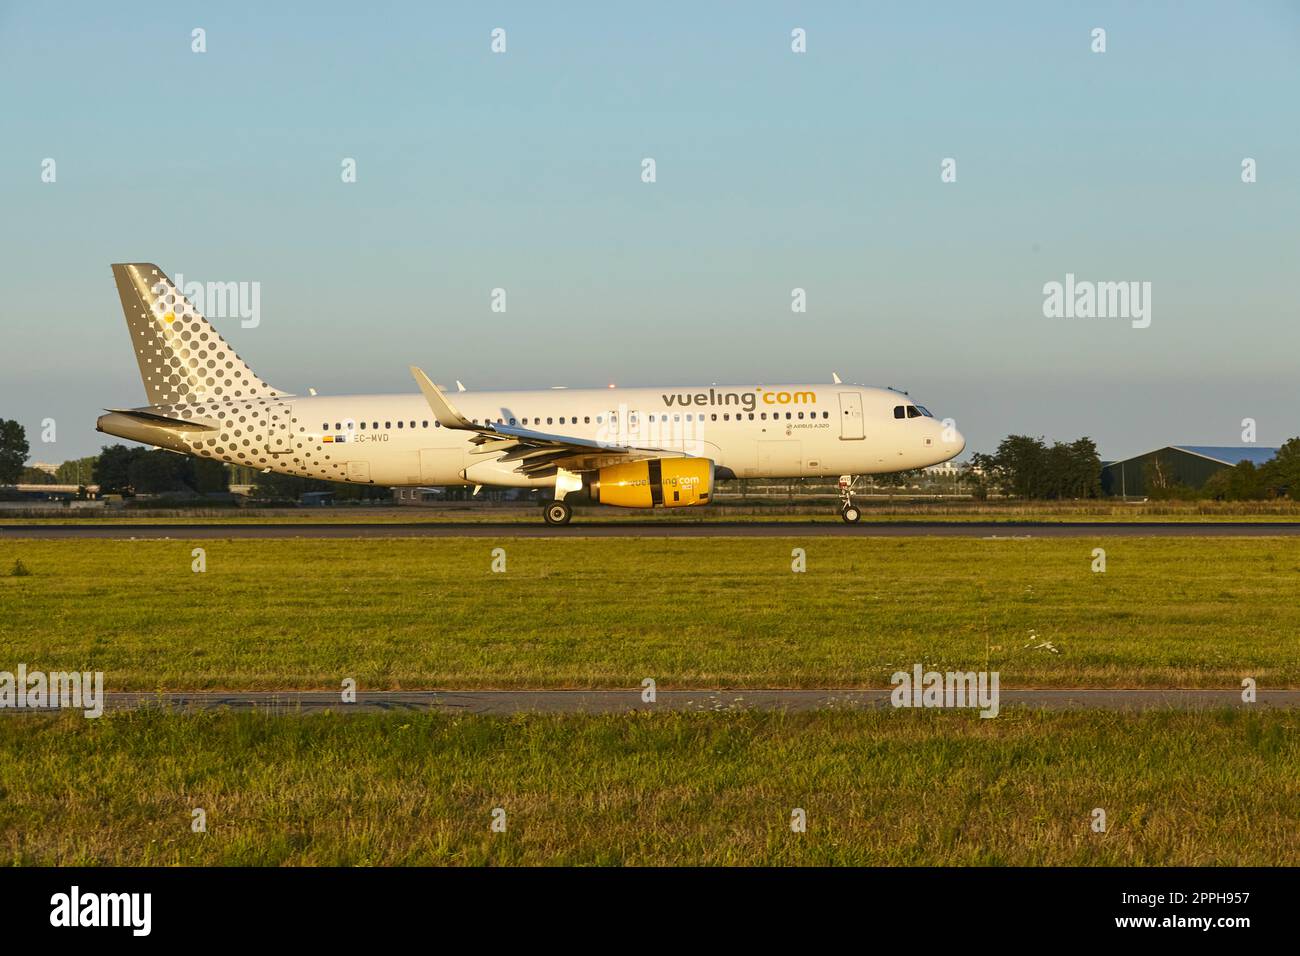 Amsterdam aéroport Schiphol - Airbus A320-232 de Vueling atterrit Banque D'Images